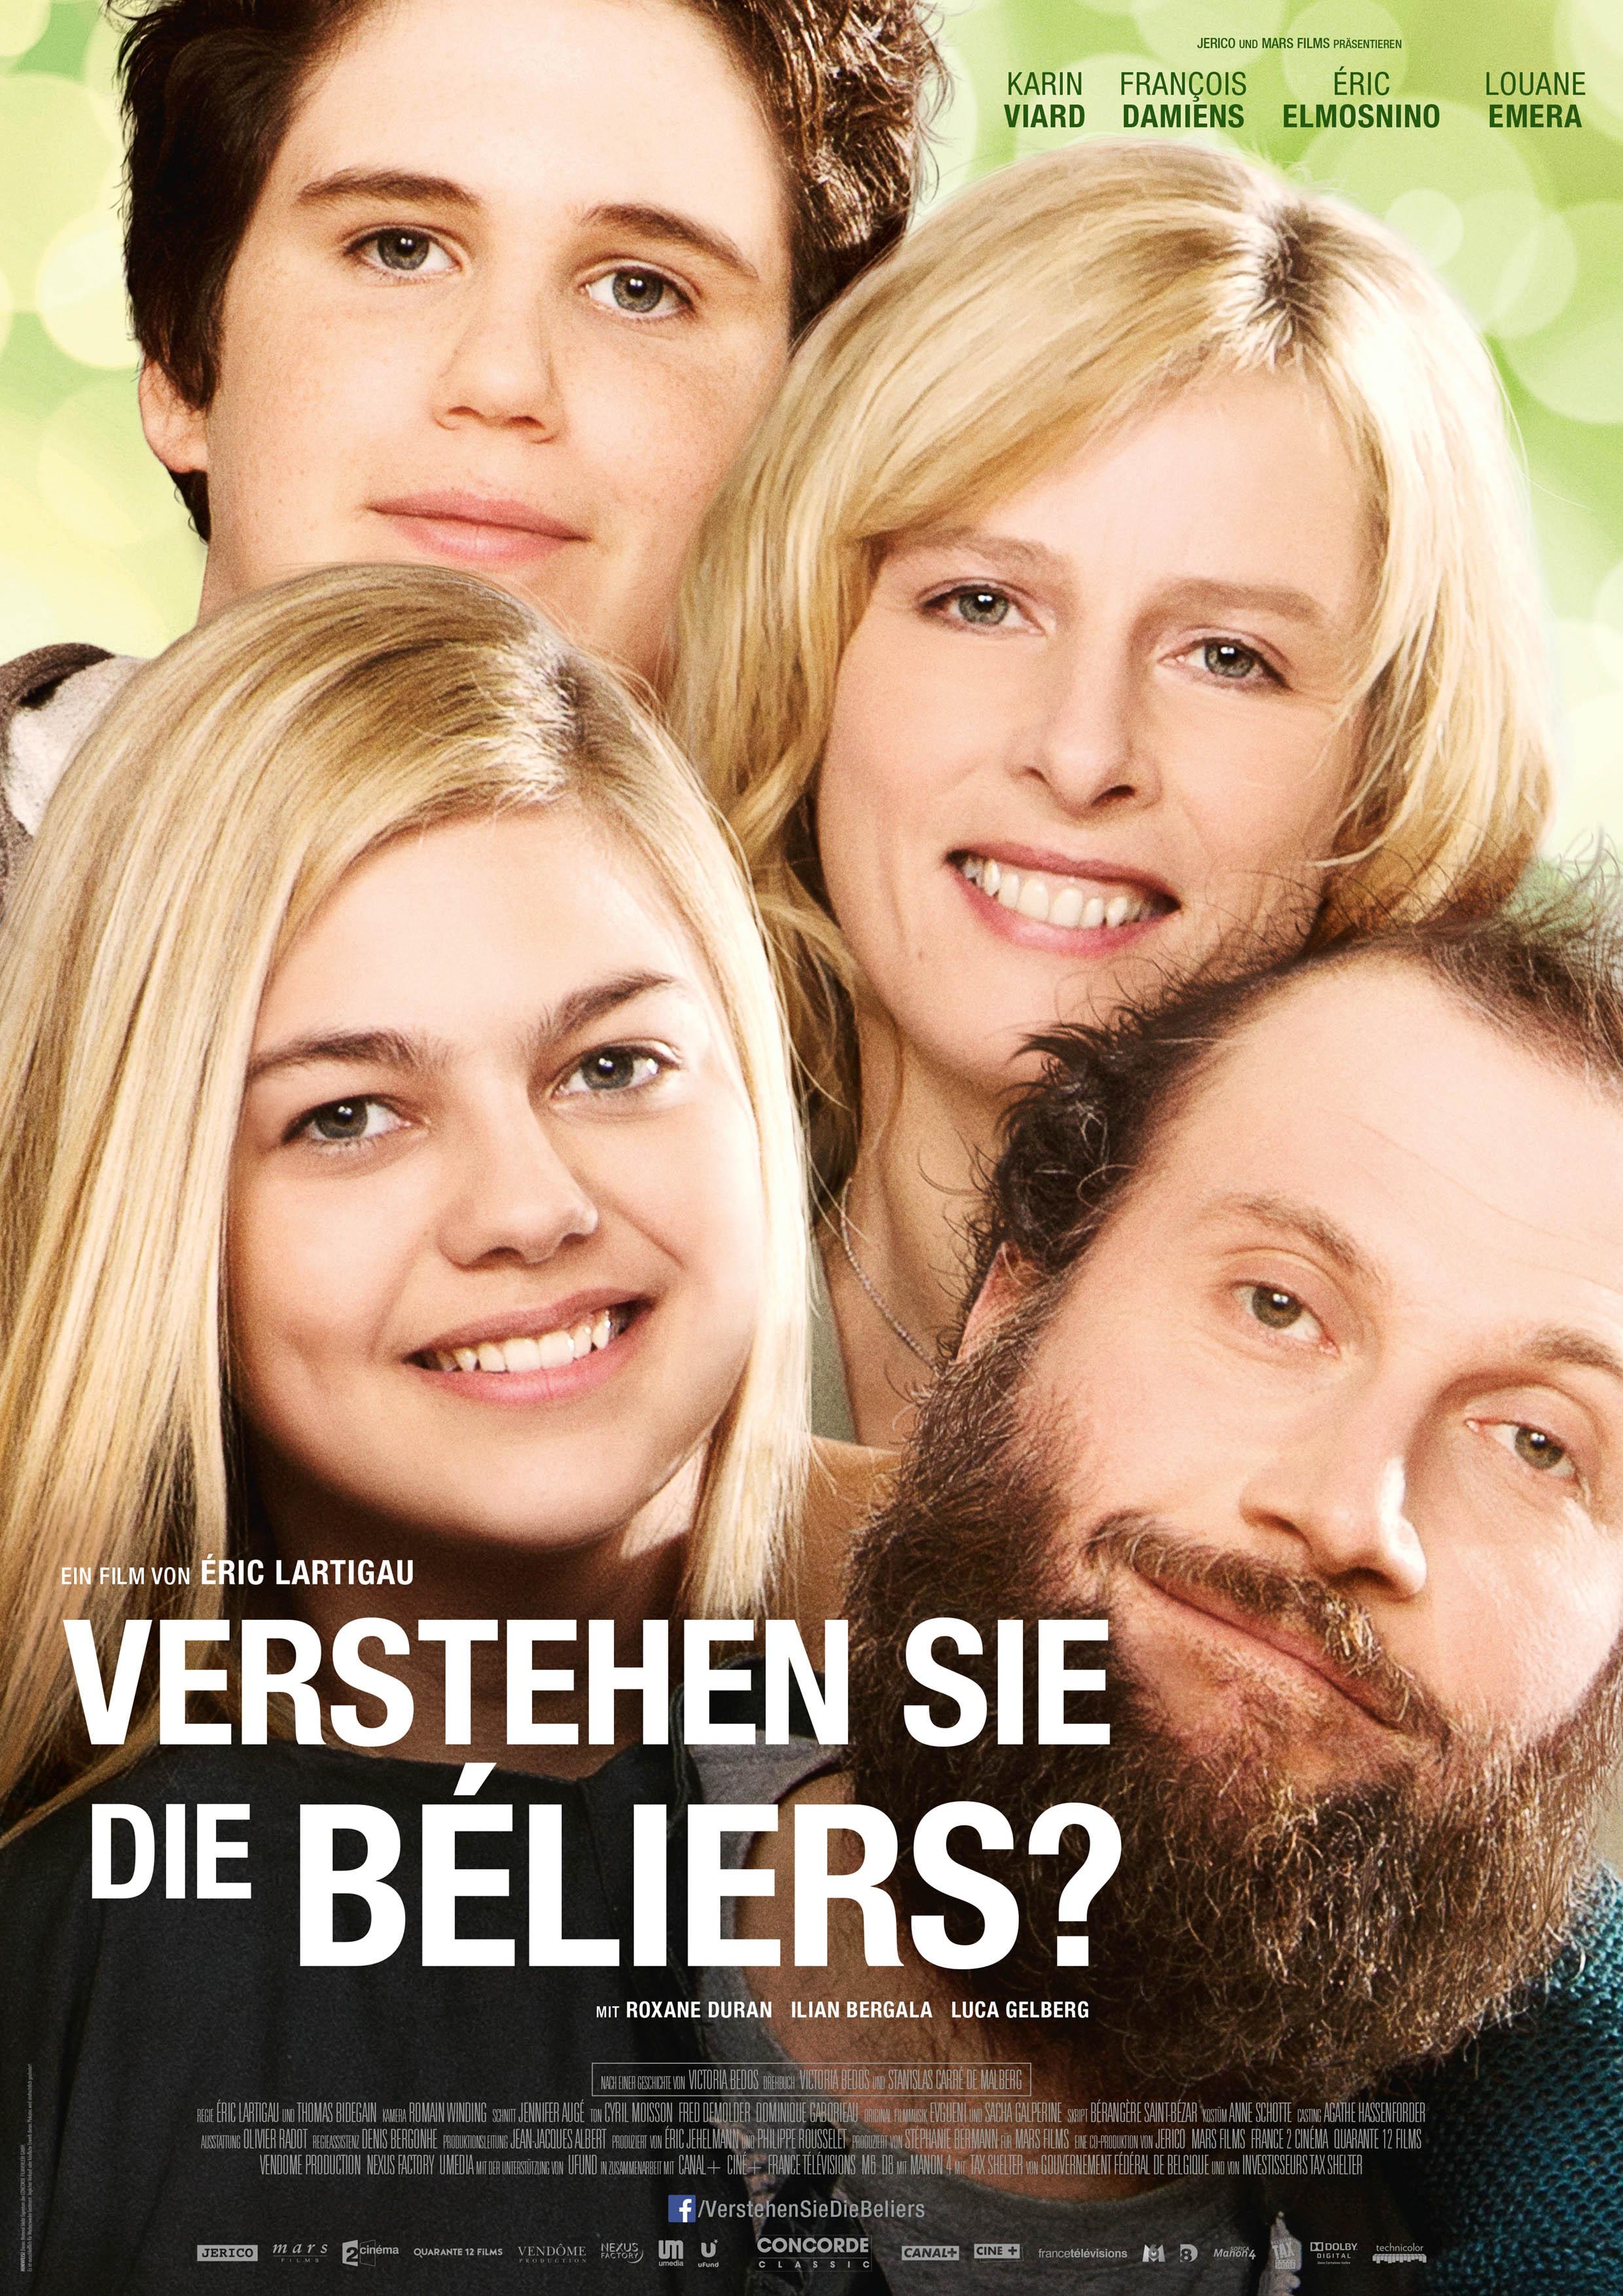 Постер фильма Голос семьи Белье | La famille Bélier